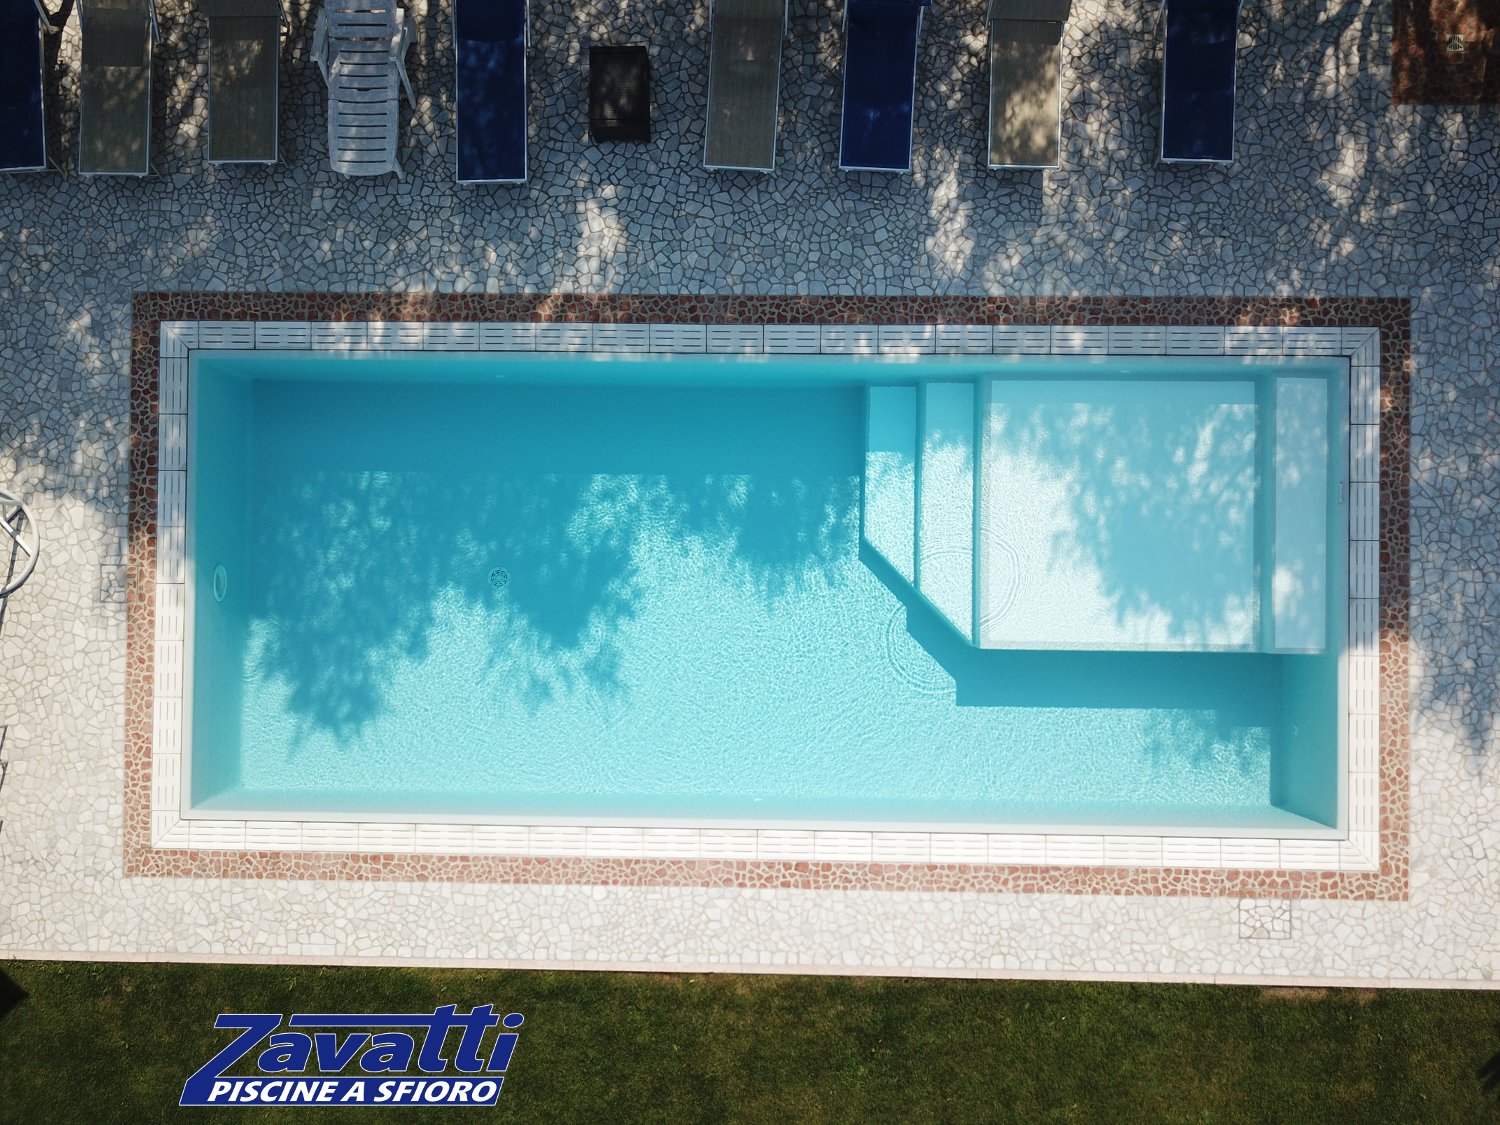 Vista dall'alto di una piscina a sfioro Zavatti con griglia in pietra ricostruita bianca e zona relax interna